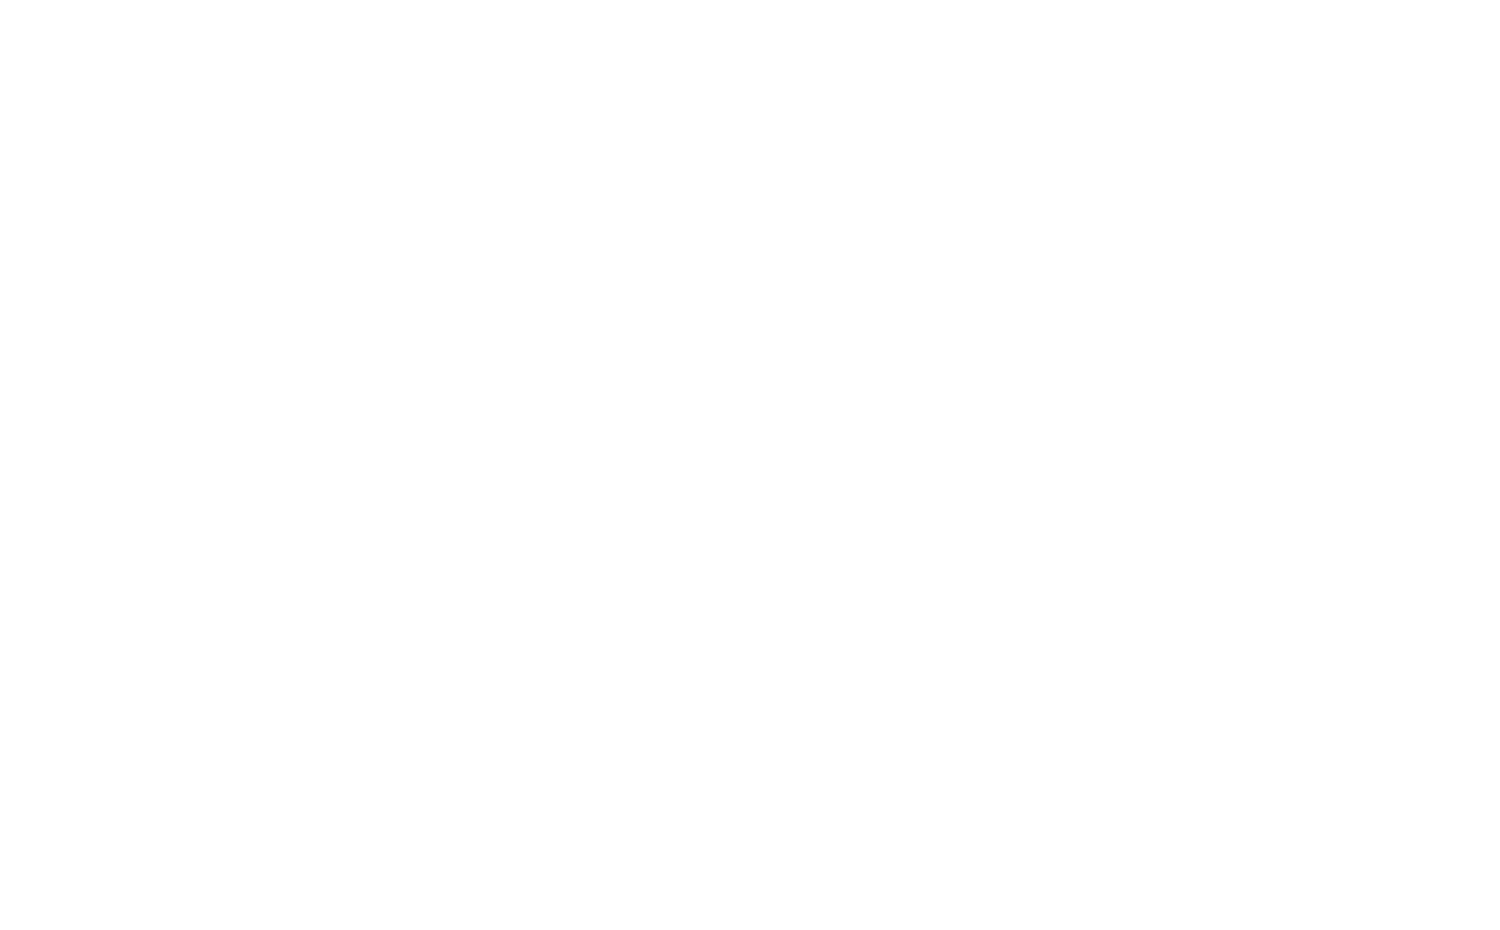 Human42